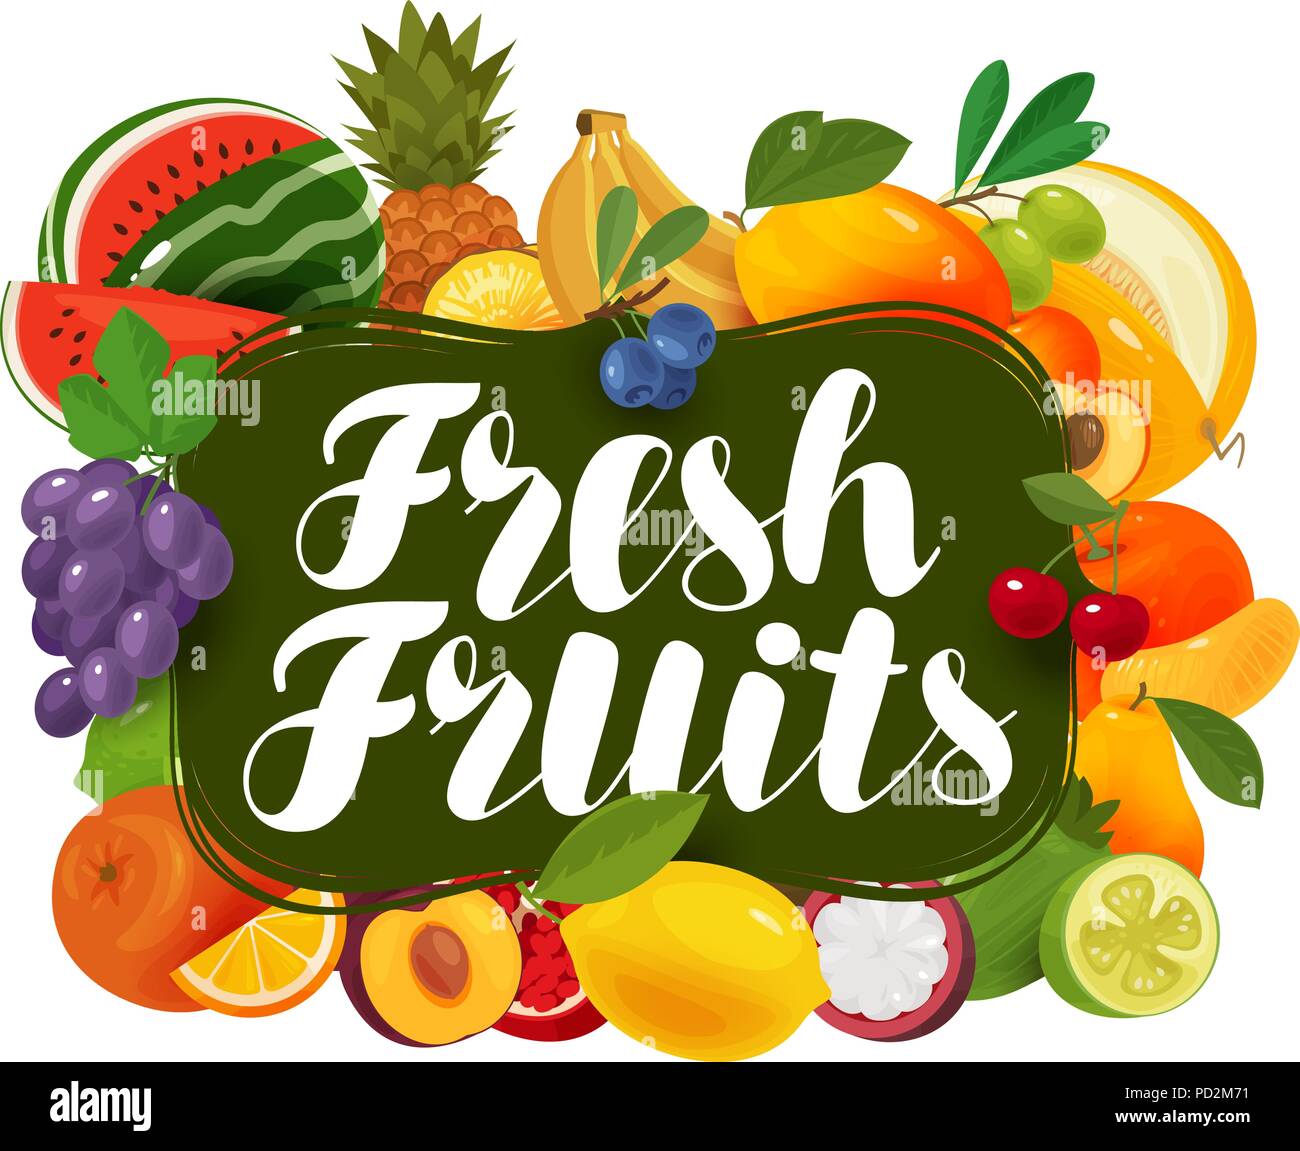 Frische Früchte. Natürliche Lebensmittel, greengrocery Konzept. Vector Illustration Stock Vektor